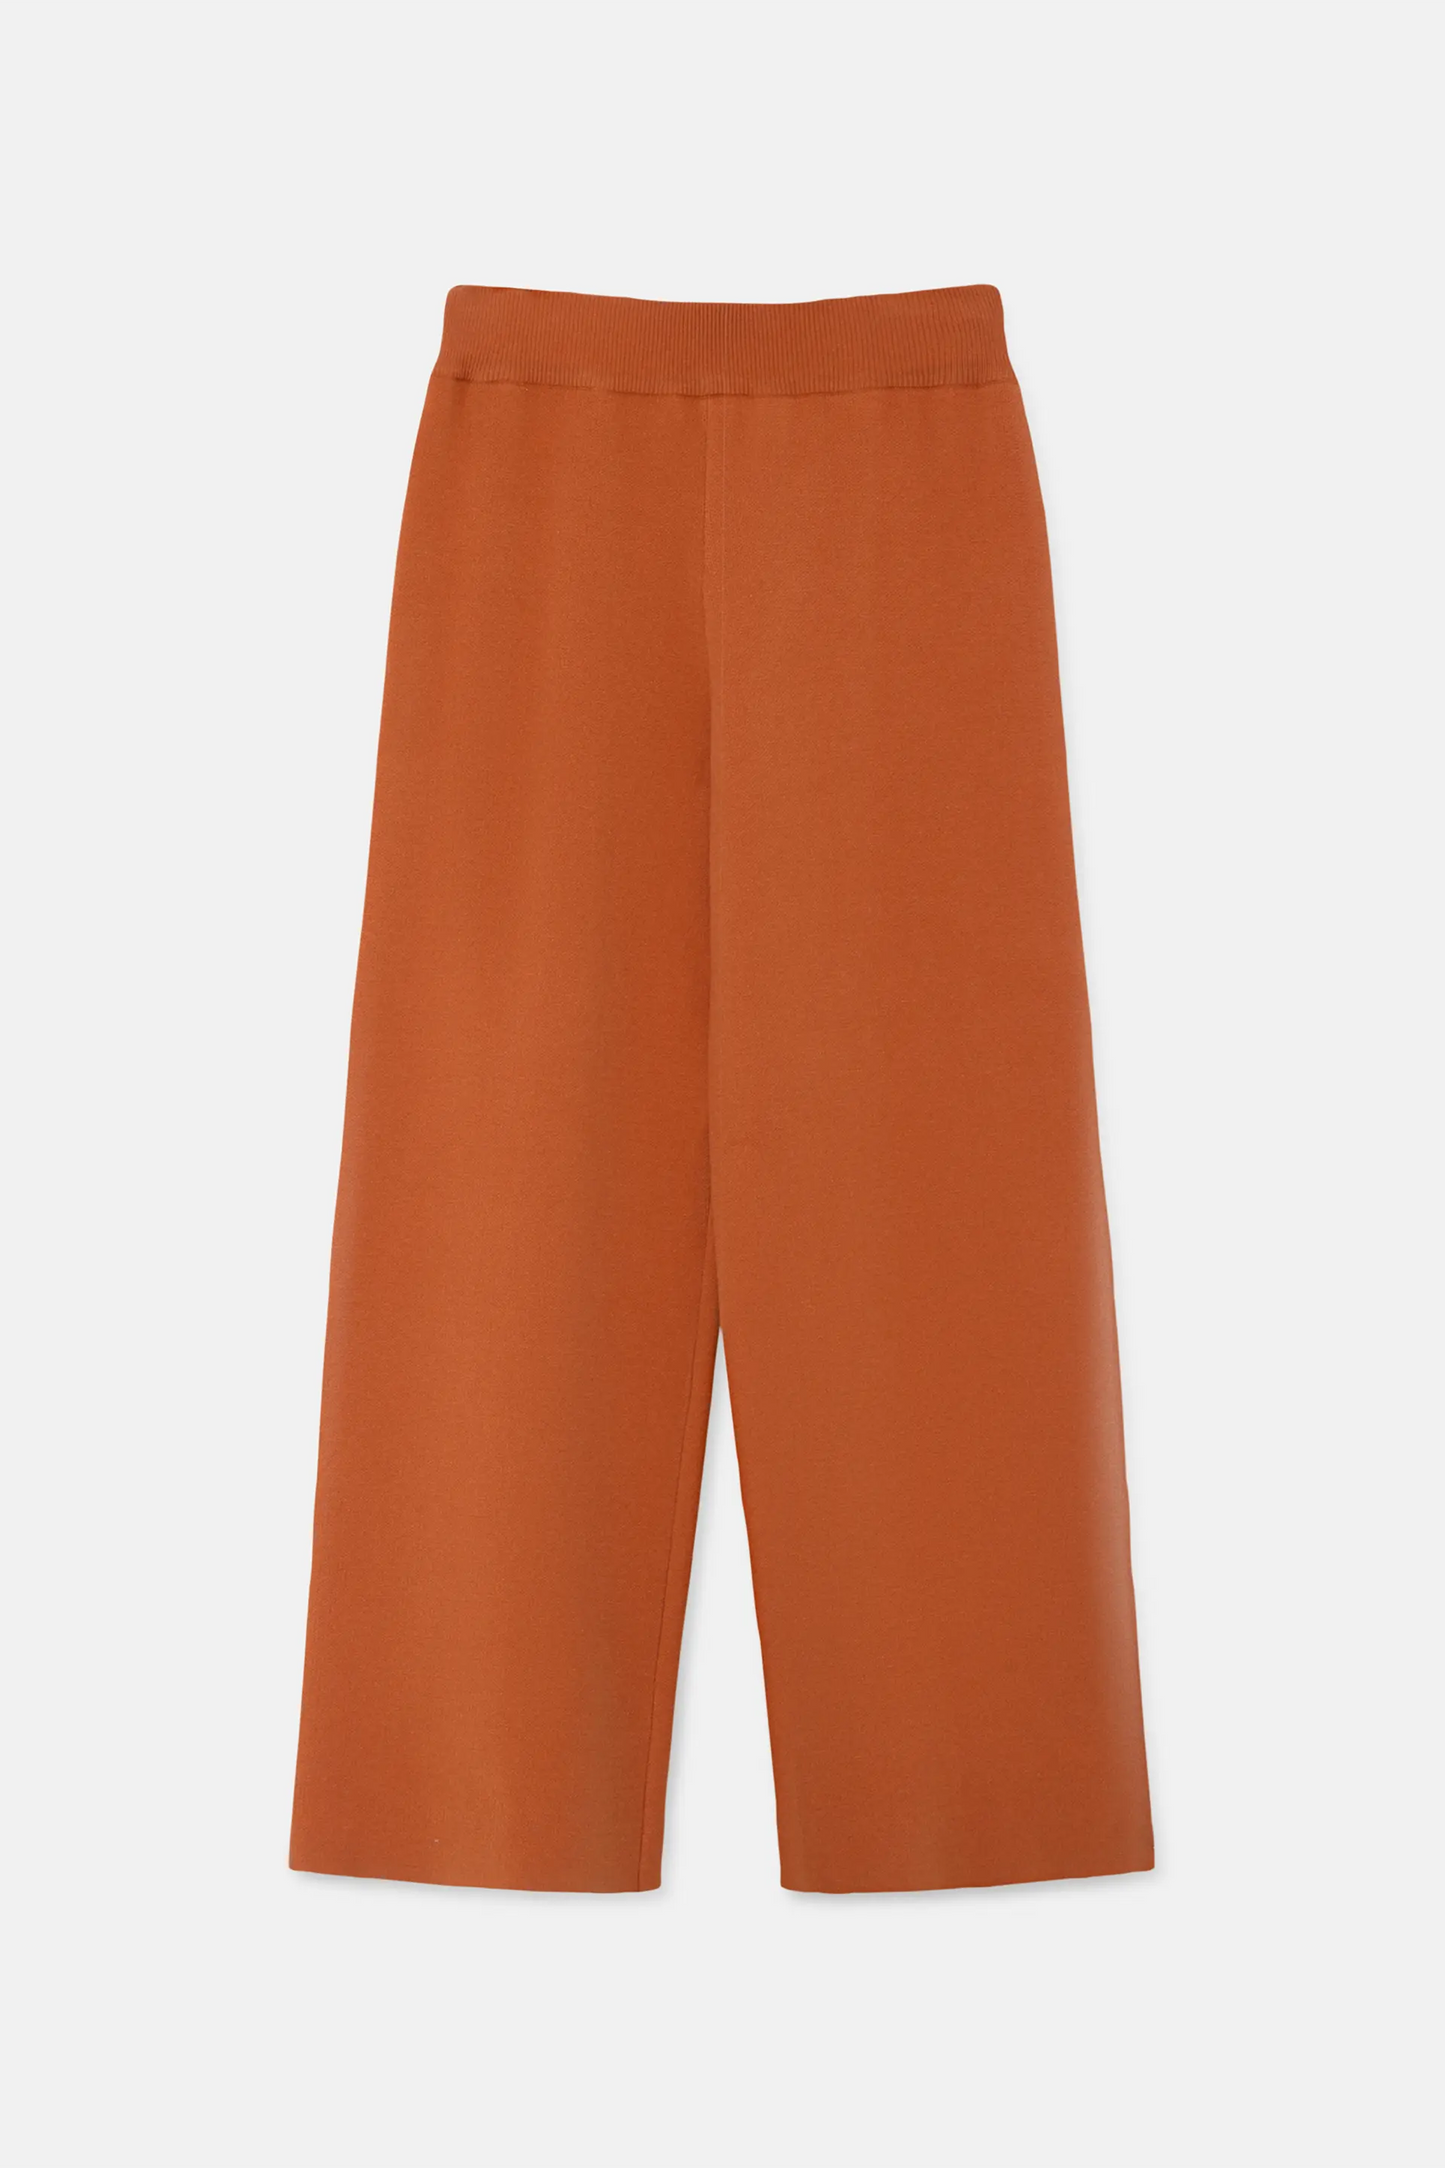 Pantalón largo recto de punto naranja